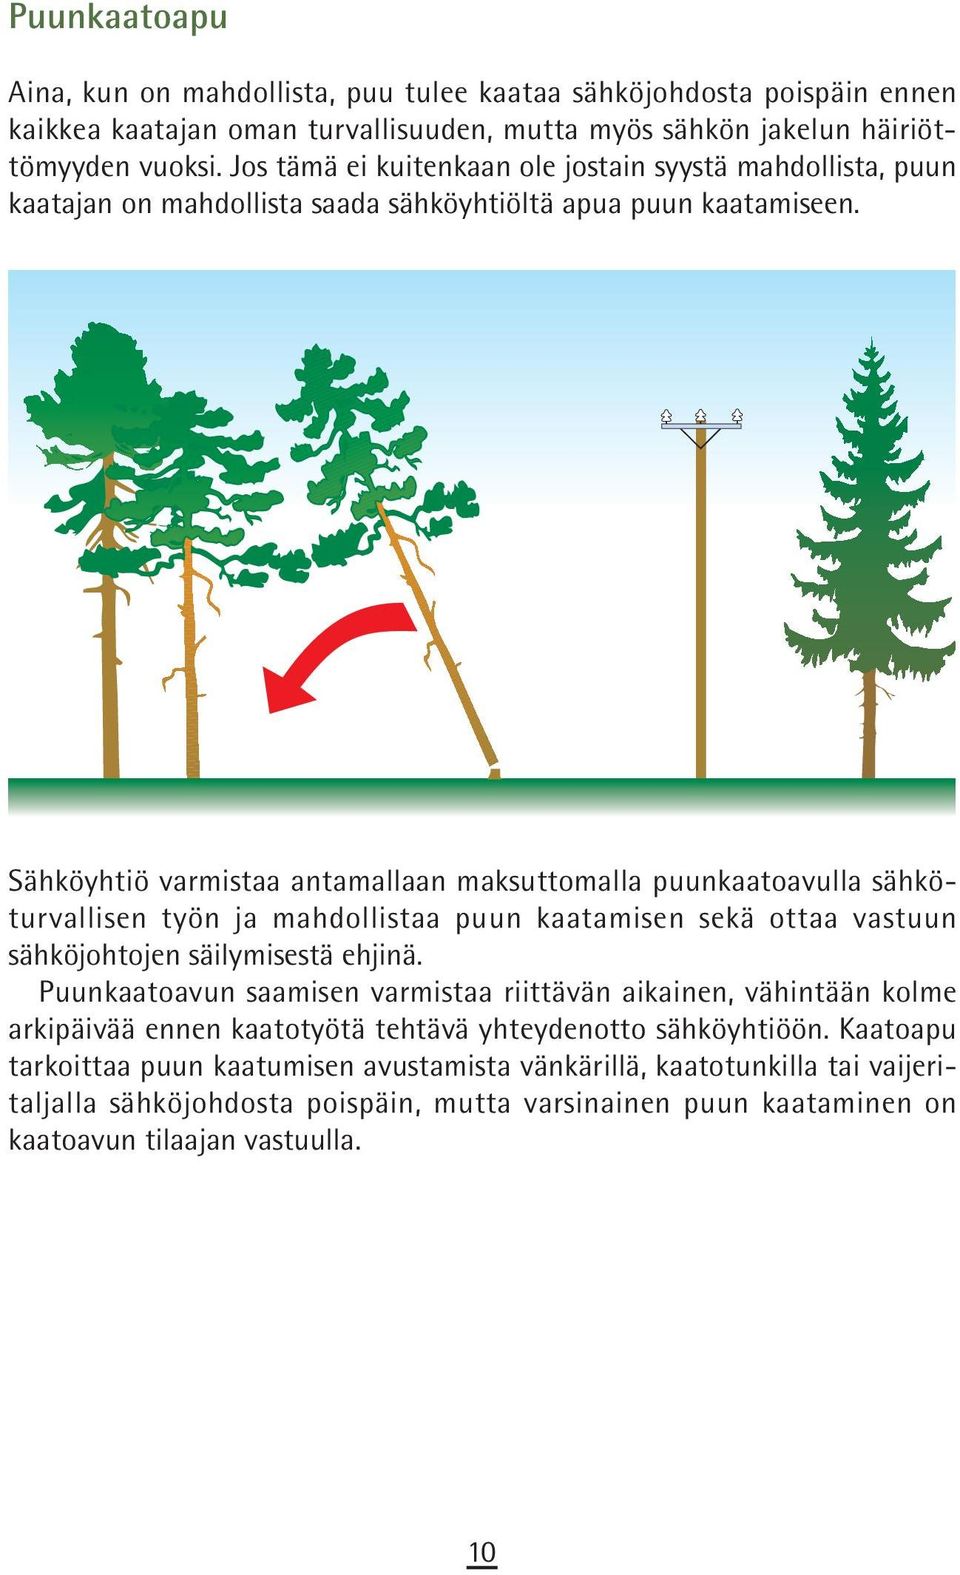 Sähköyhtiö varmistaa antamallaan maksuttomalla puunkaatoavulla sähköturvallisen työn ja mahdollistaa puun kaatamisen sekä ottaa vastuun sähköjohtojen säilymisestä ehjinä.